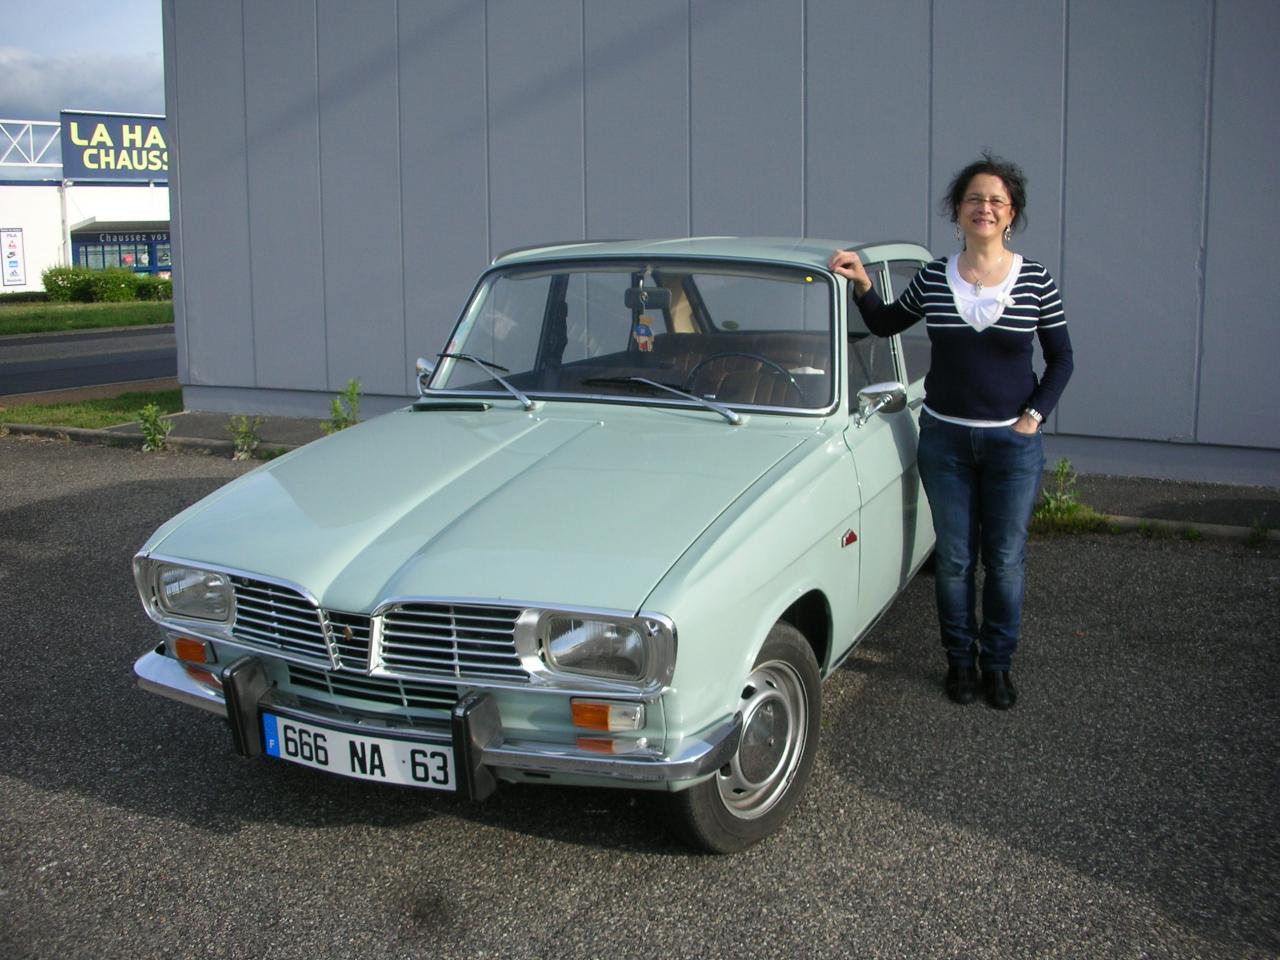 Renault 16 de Danielle